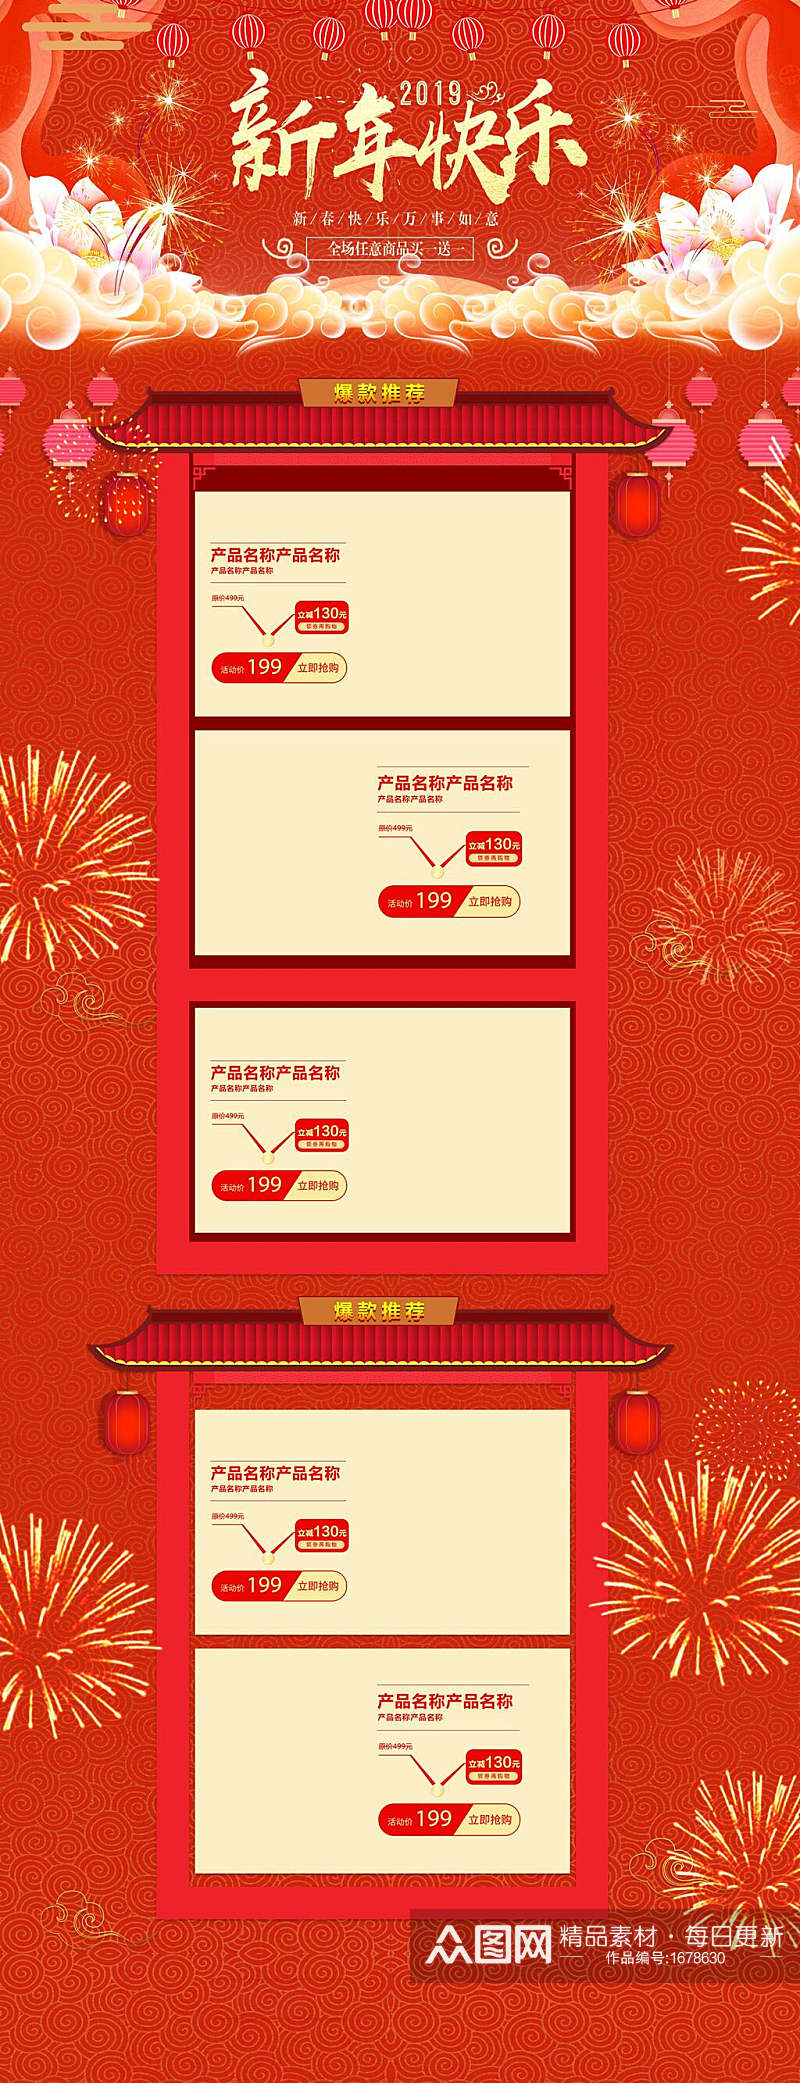 热闹传统中国风新年快乐活动大促电商详情页素材